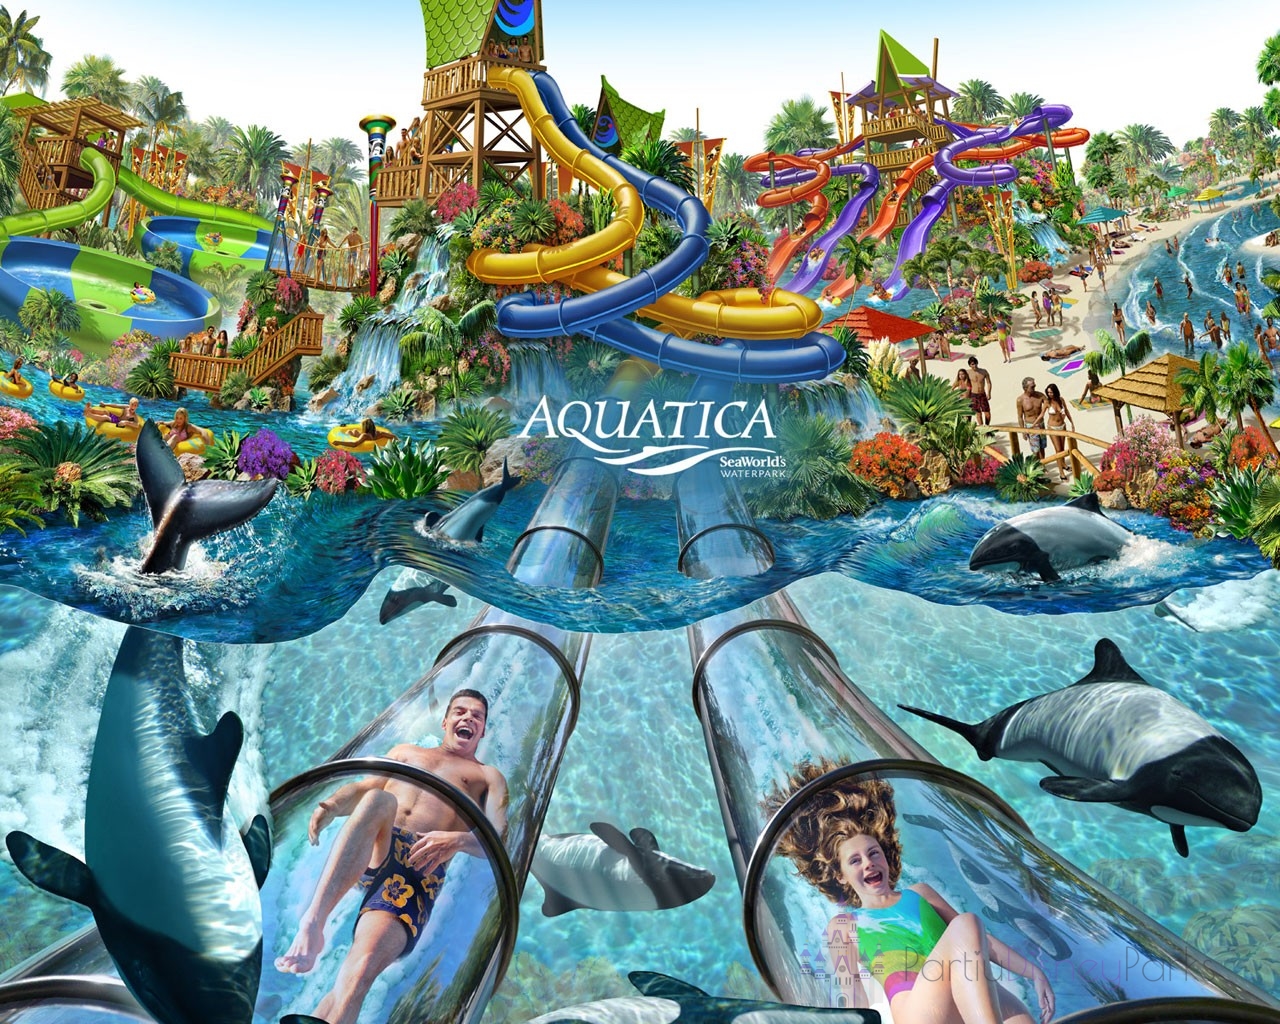 Parque Aquatica - Parc aquatique Seaworld